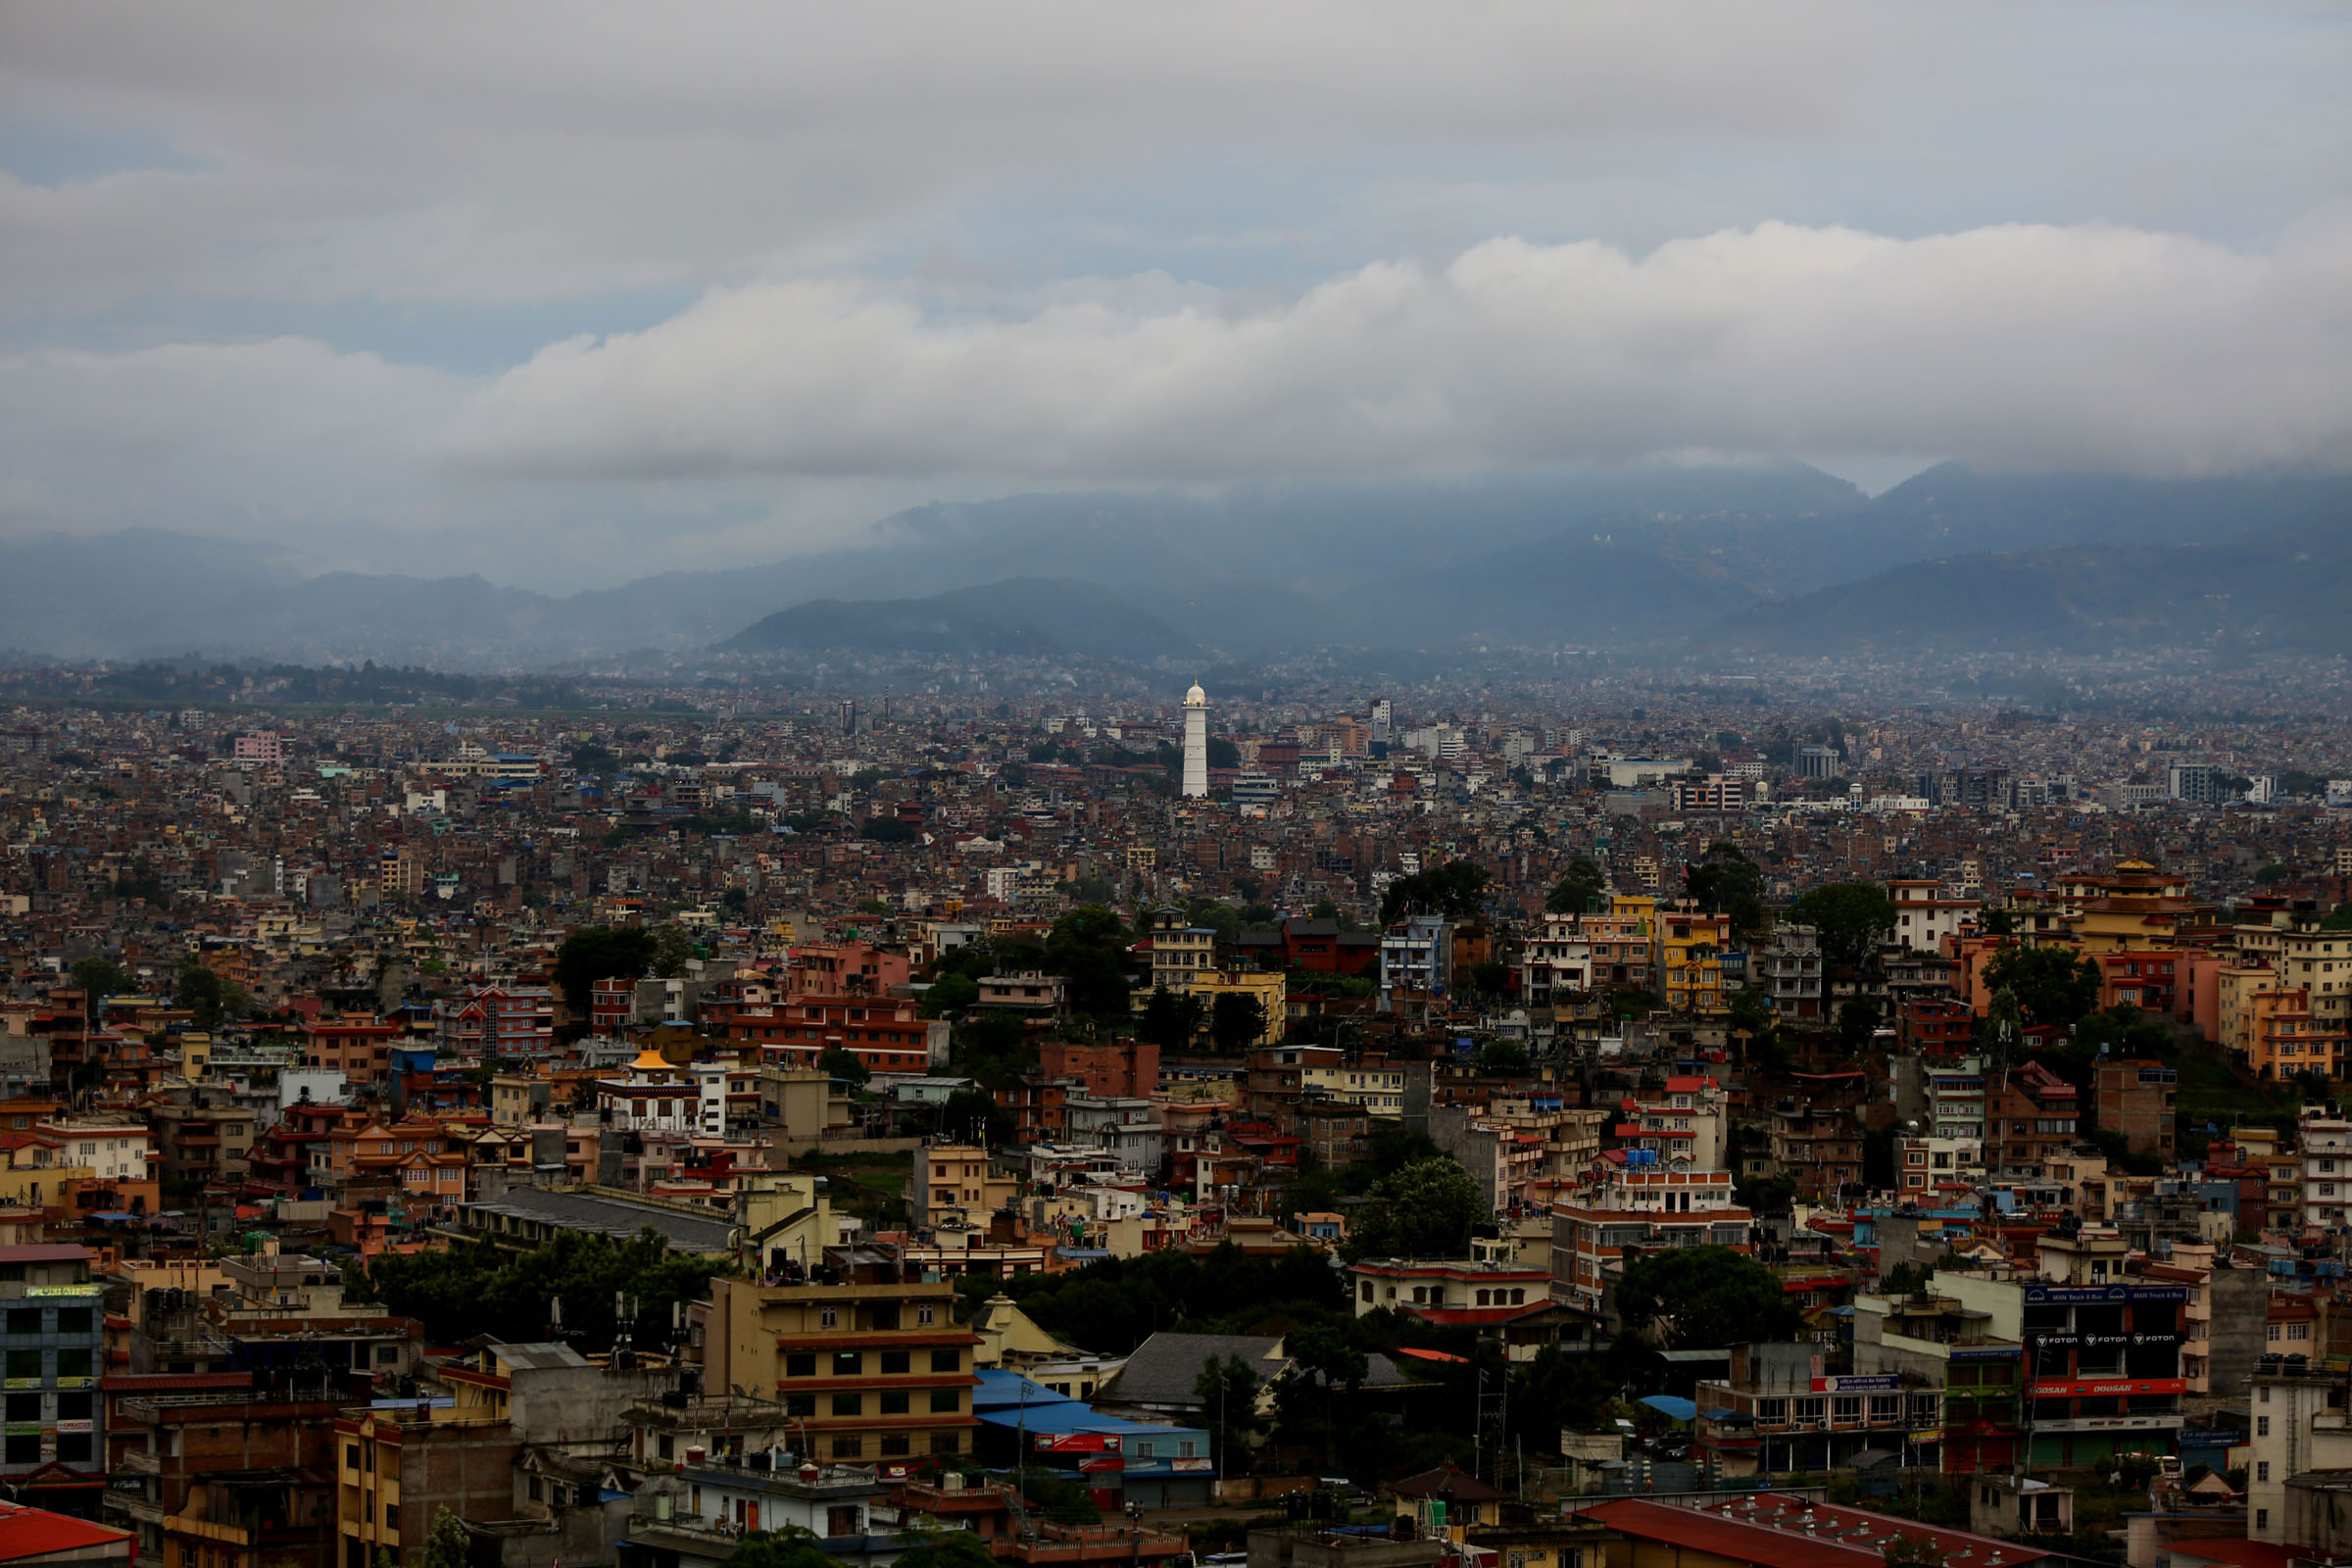 काठमाडौं महानगरको प्रत्येक घरमा ८ व्यक्ति